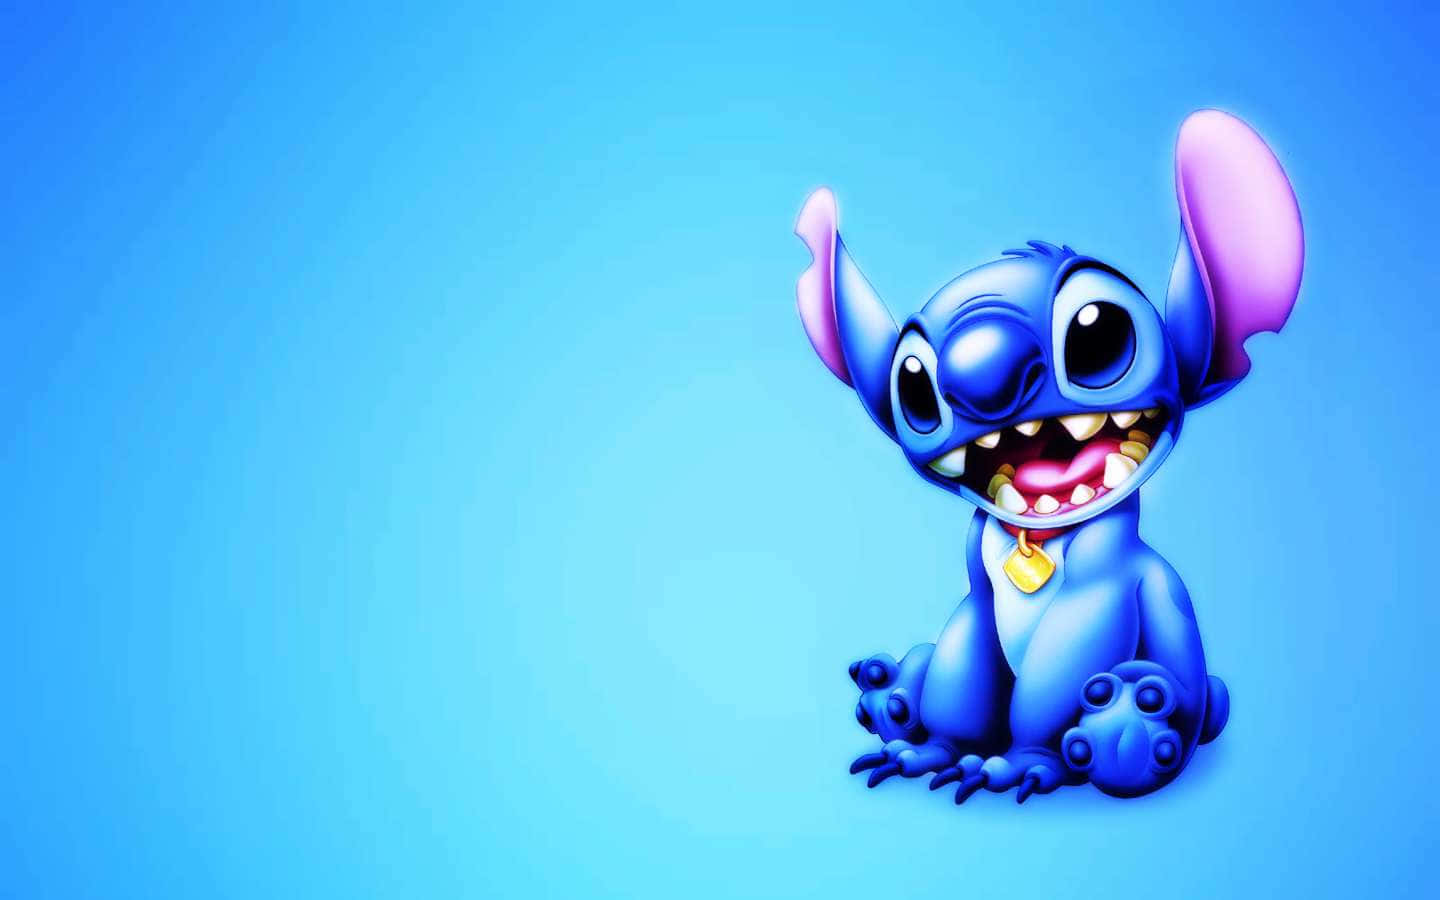 Adorable Stitch Picture